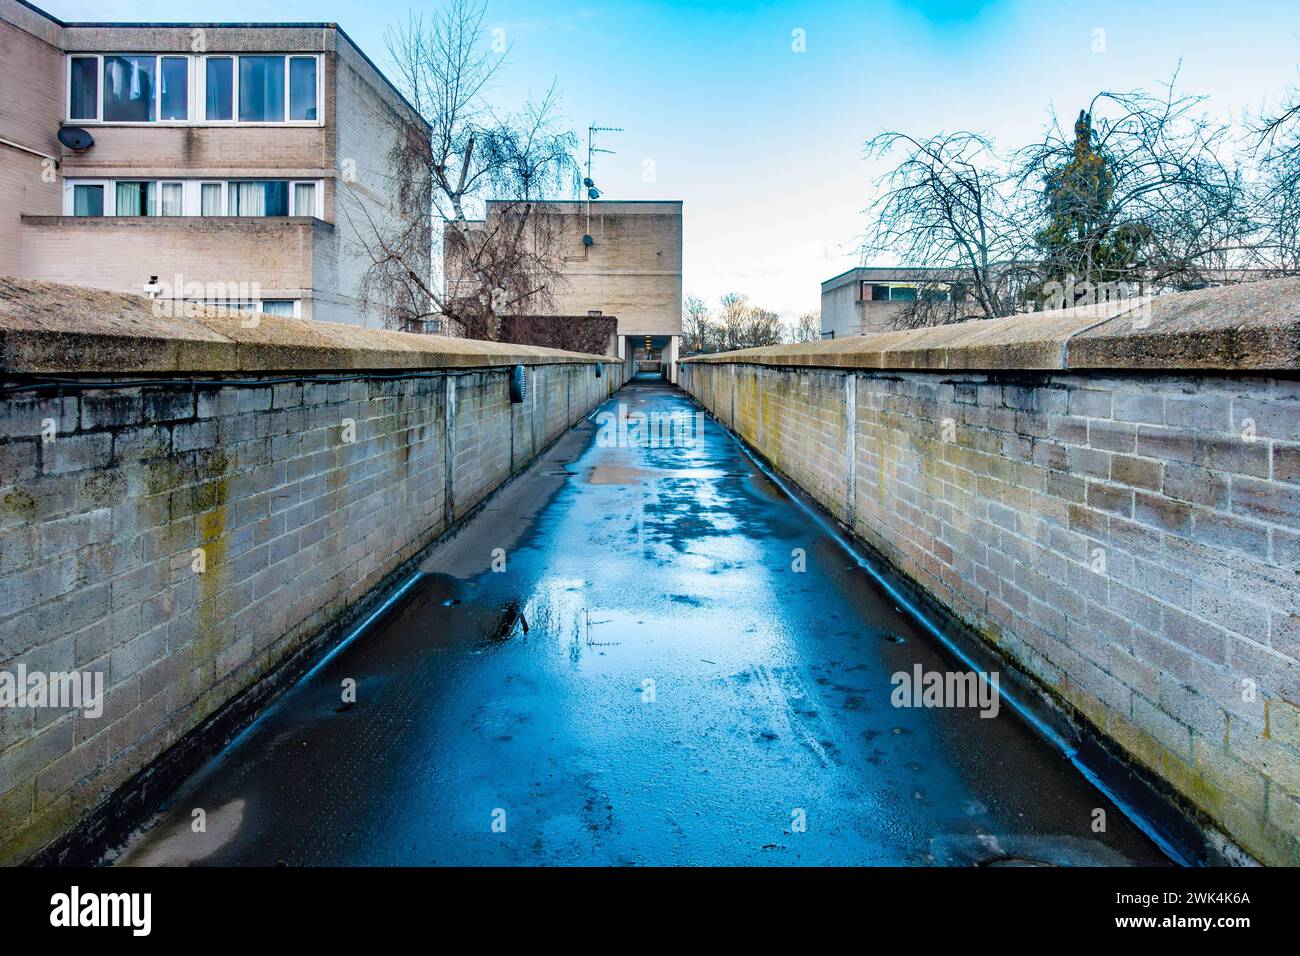 Il cielo blu si riflette in un percorso bagnato in cemento che conduce attraverso la tenuta Ward Royal a Windsor, Berkshire, Regno Unito Foto Stock